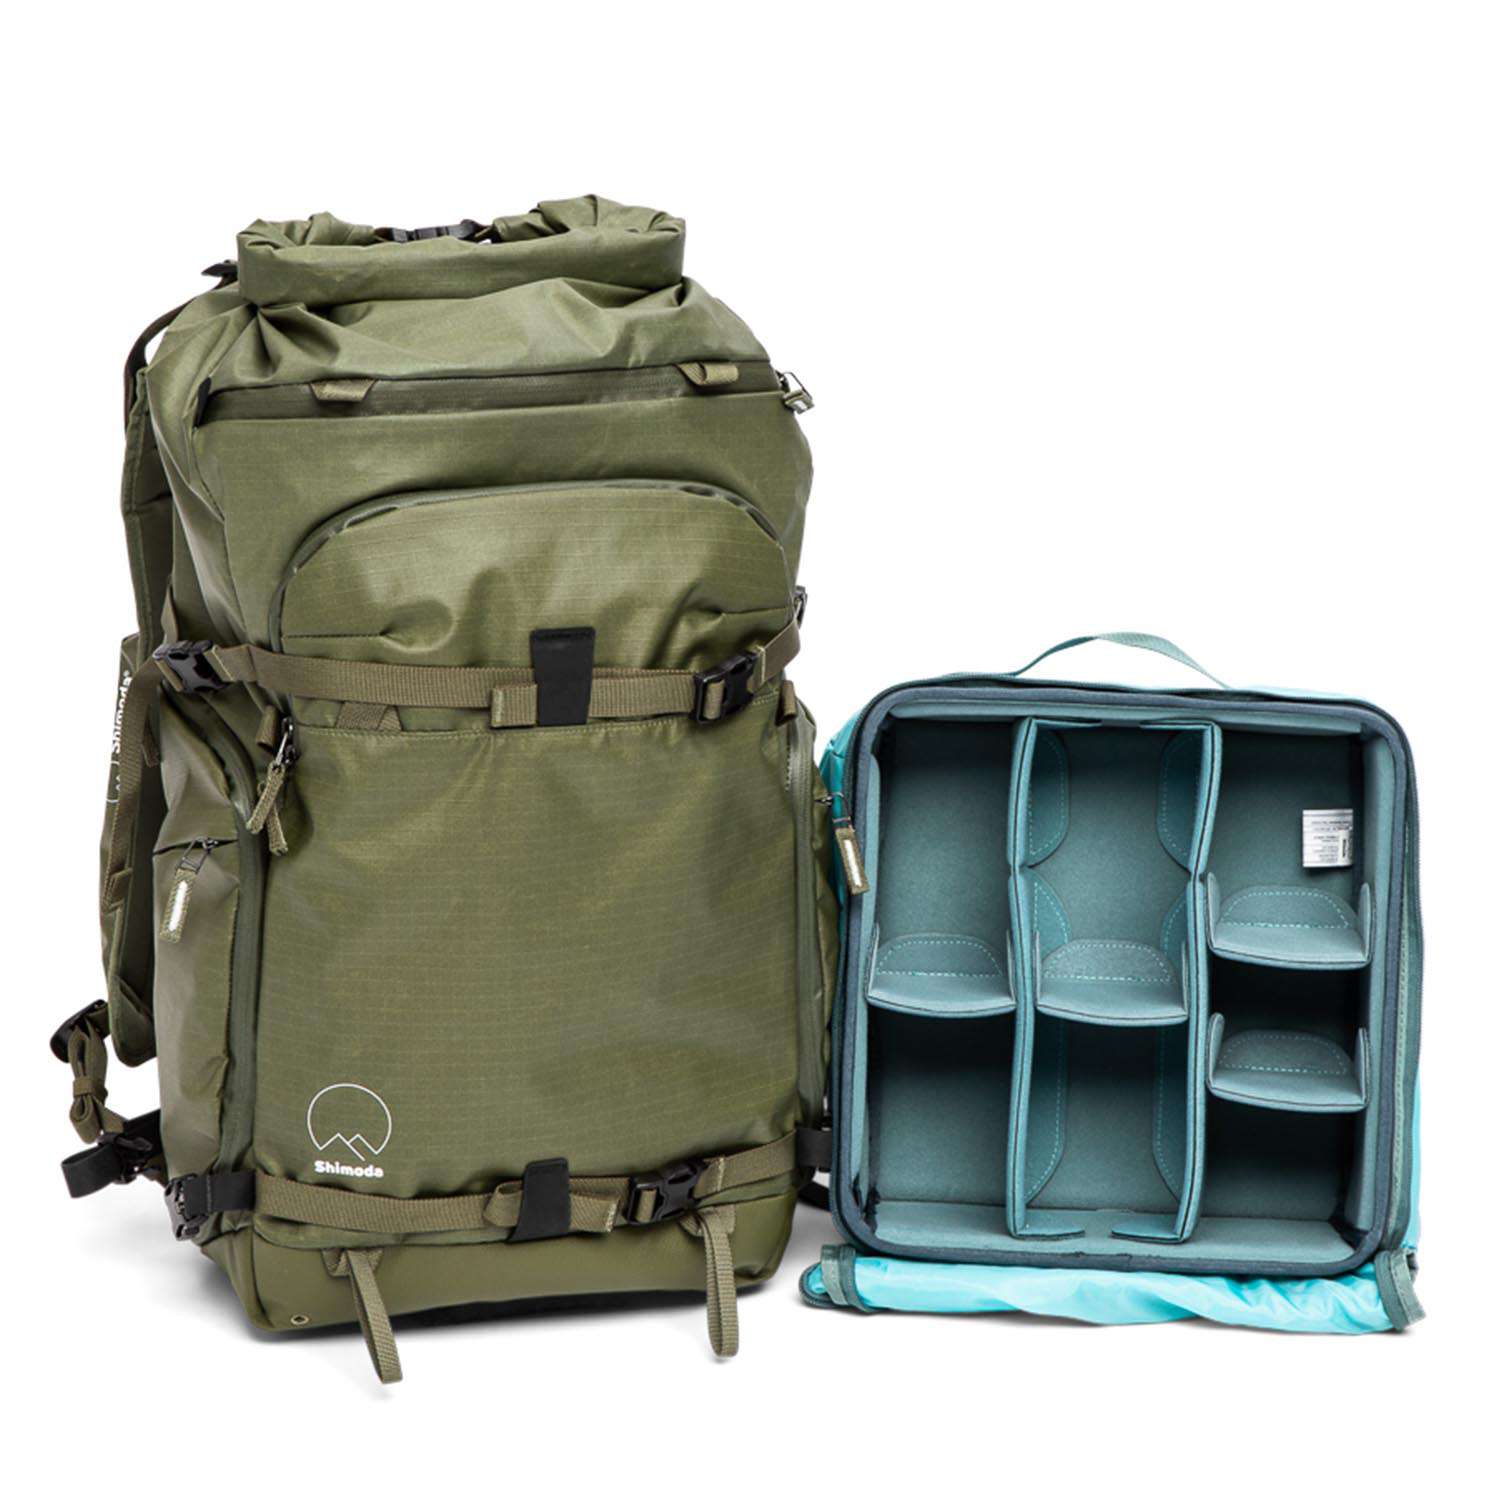 Shimoda Action X30 Starter Kit Backpack